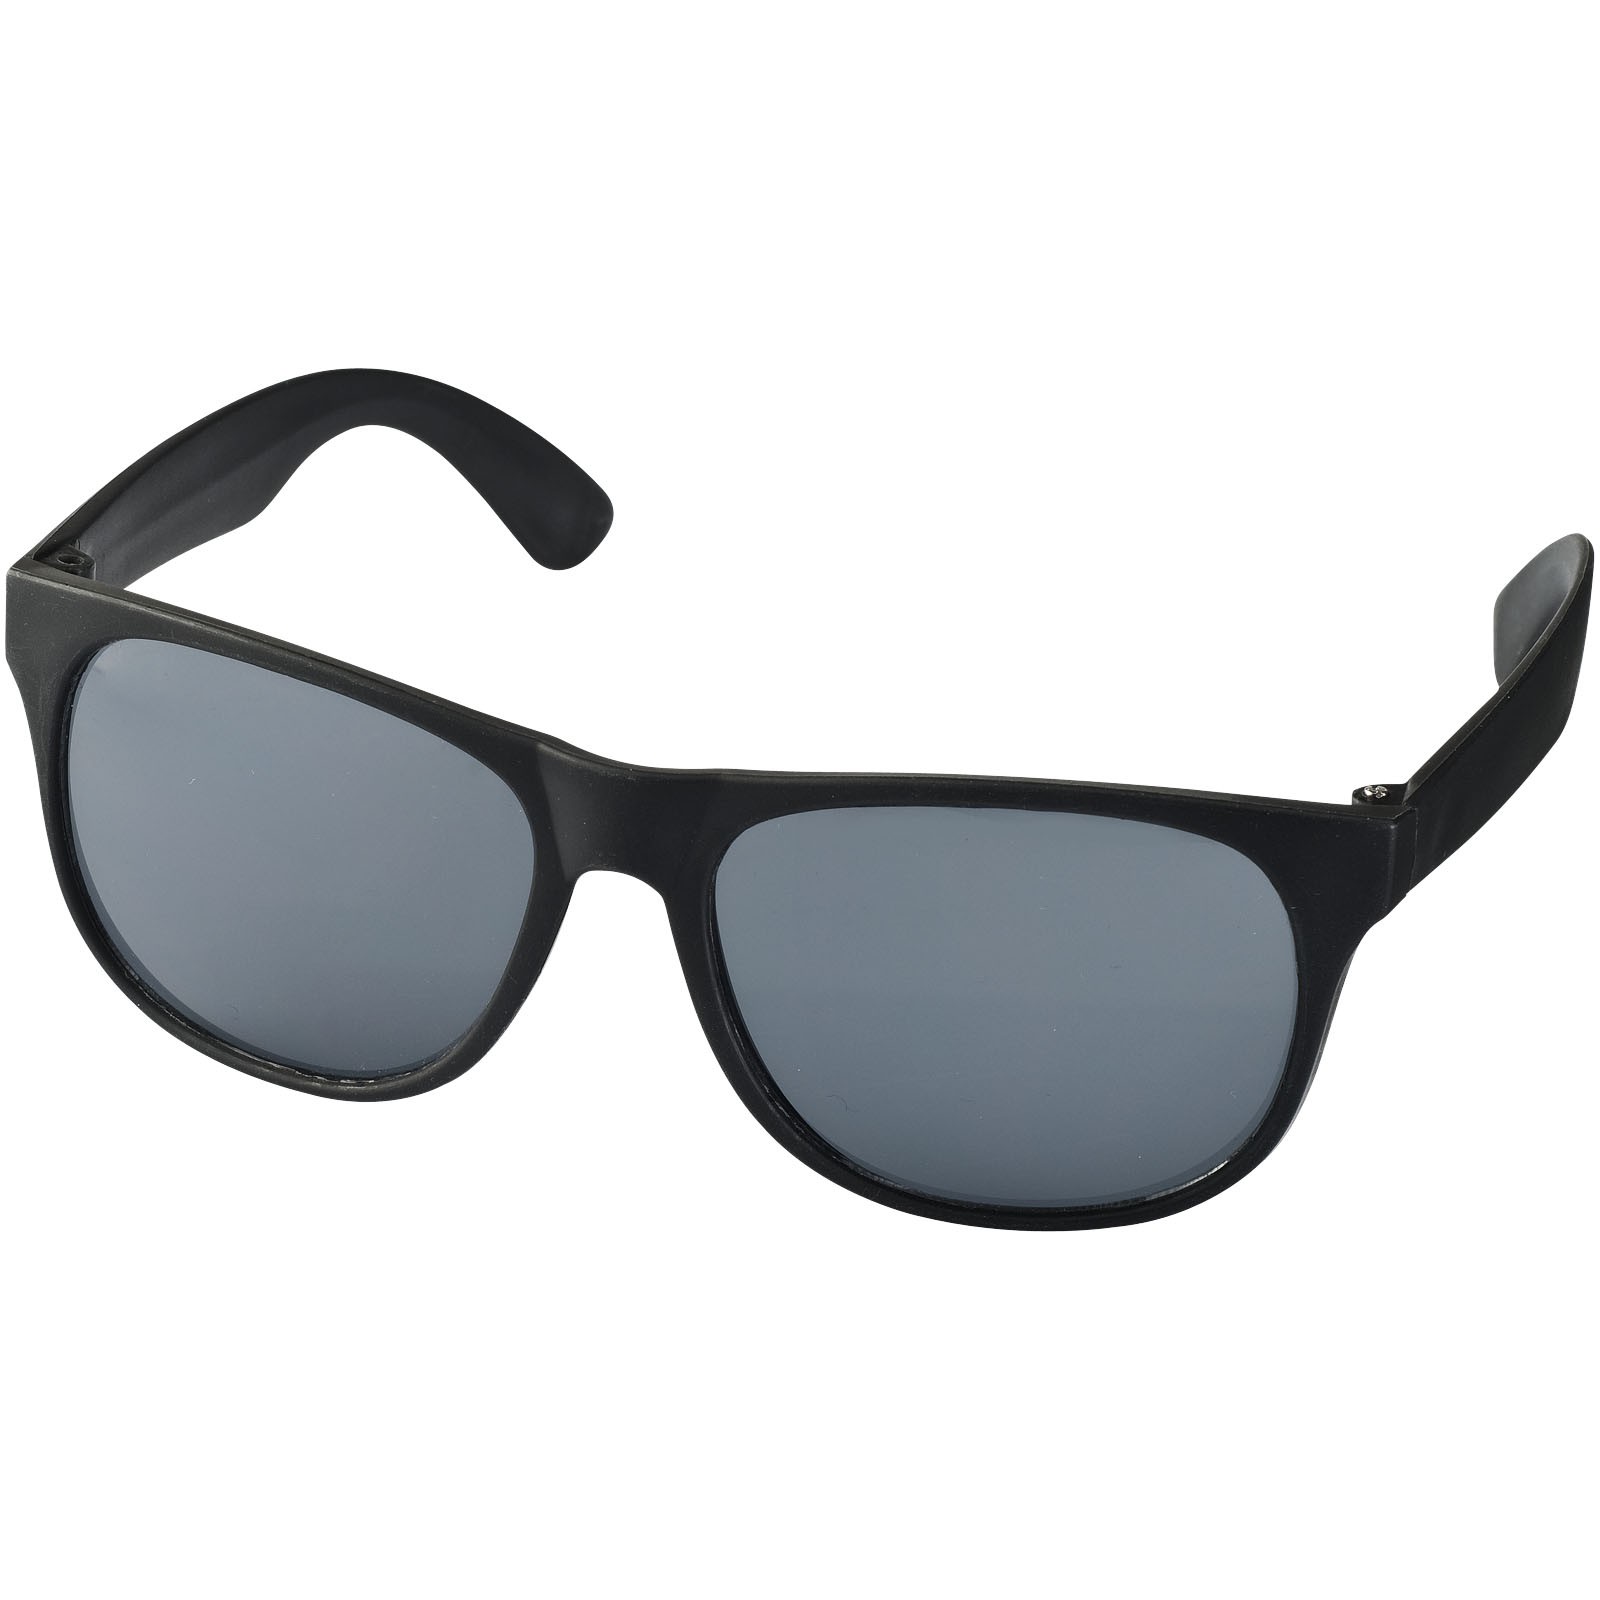 Dvoubarevné sluneční brýle Retro - Černá